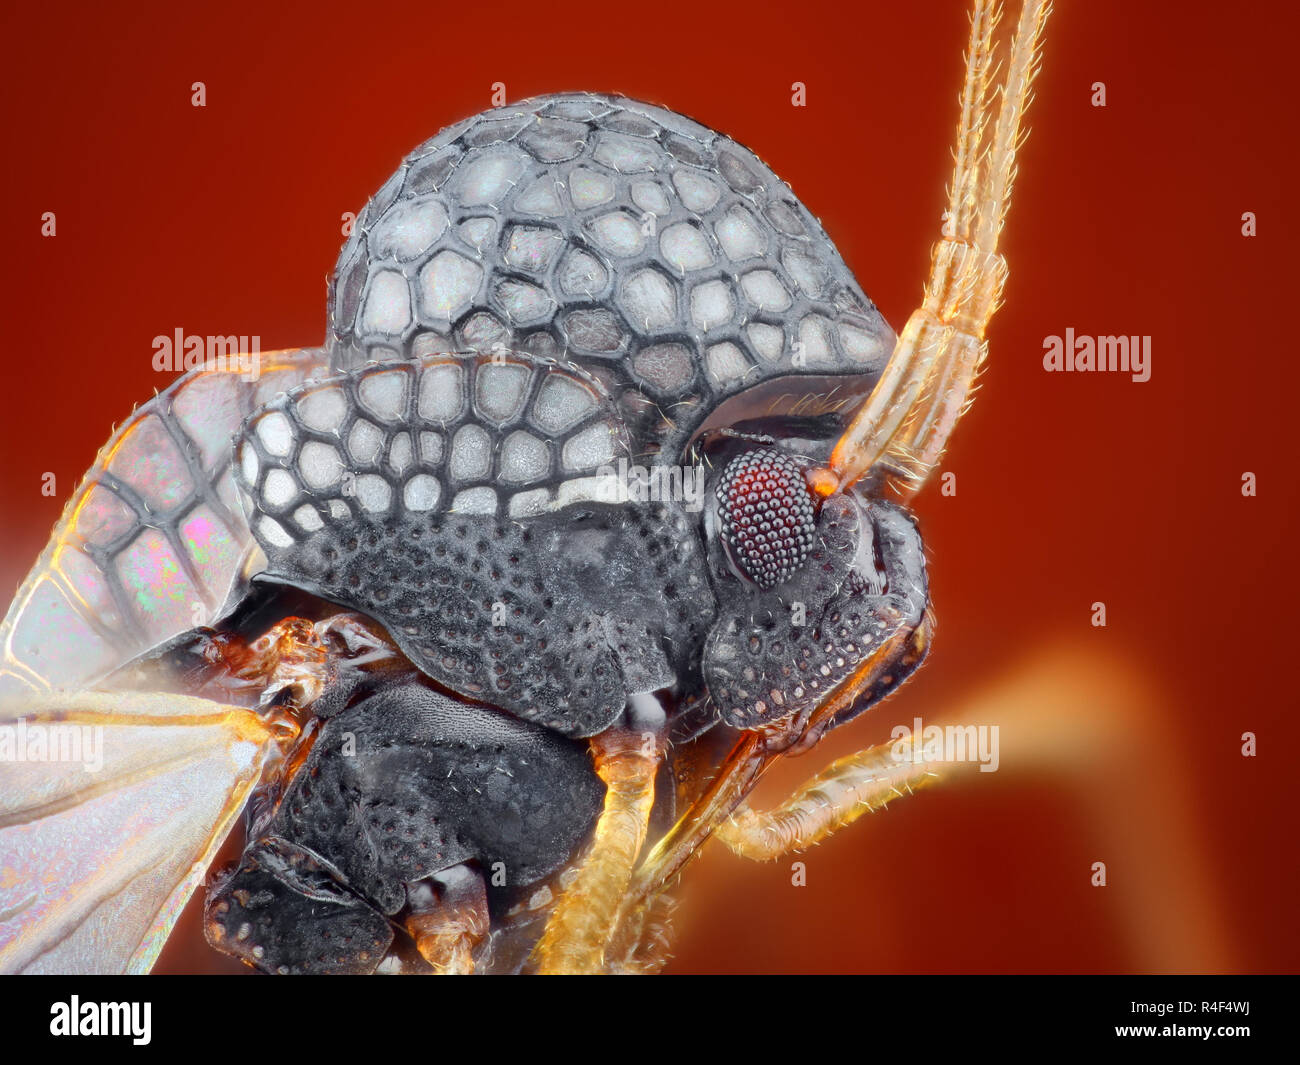 Extrem scharfe und detaillierte Studie über ein Insekt mit einem Mikroskop Ziel genommen. Das Bild wird von vielen Schüsse in die ein scharfes Bild gestapelt. Stockfoto